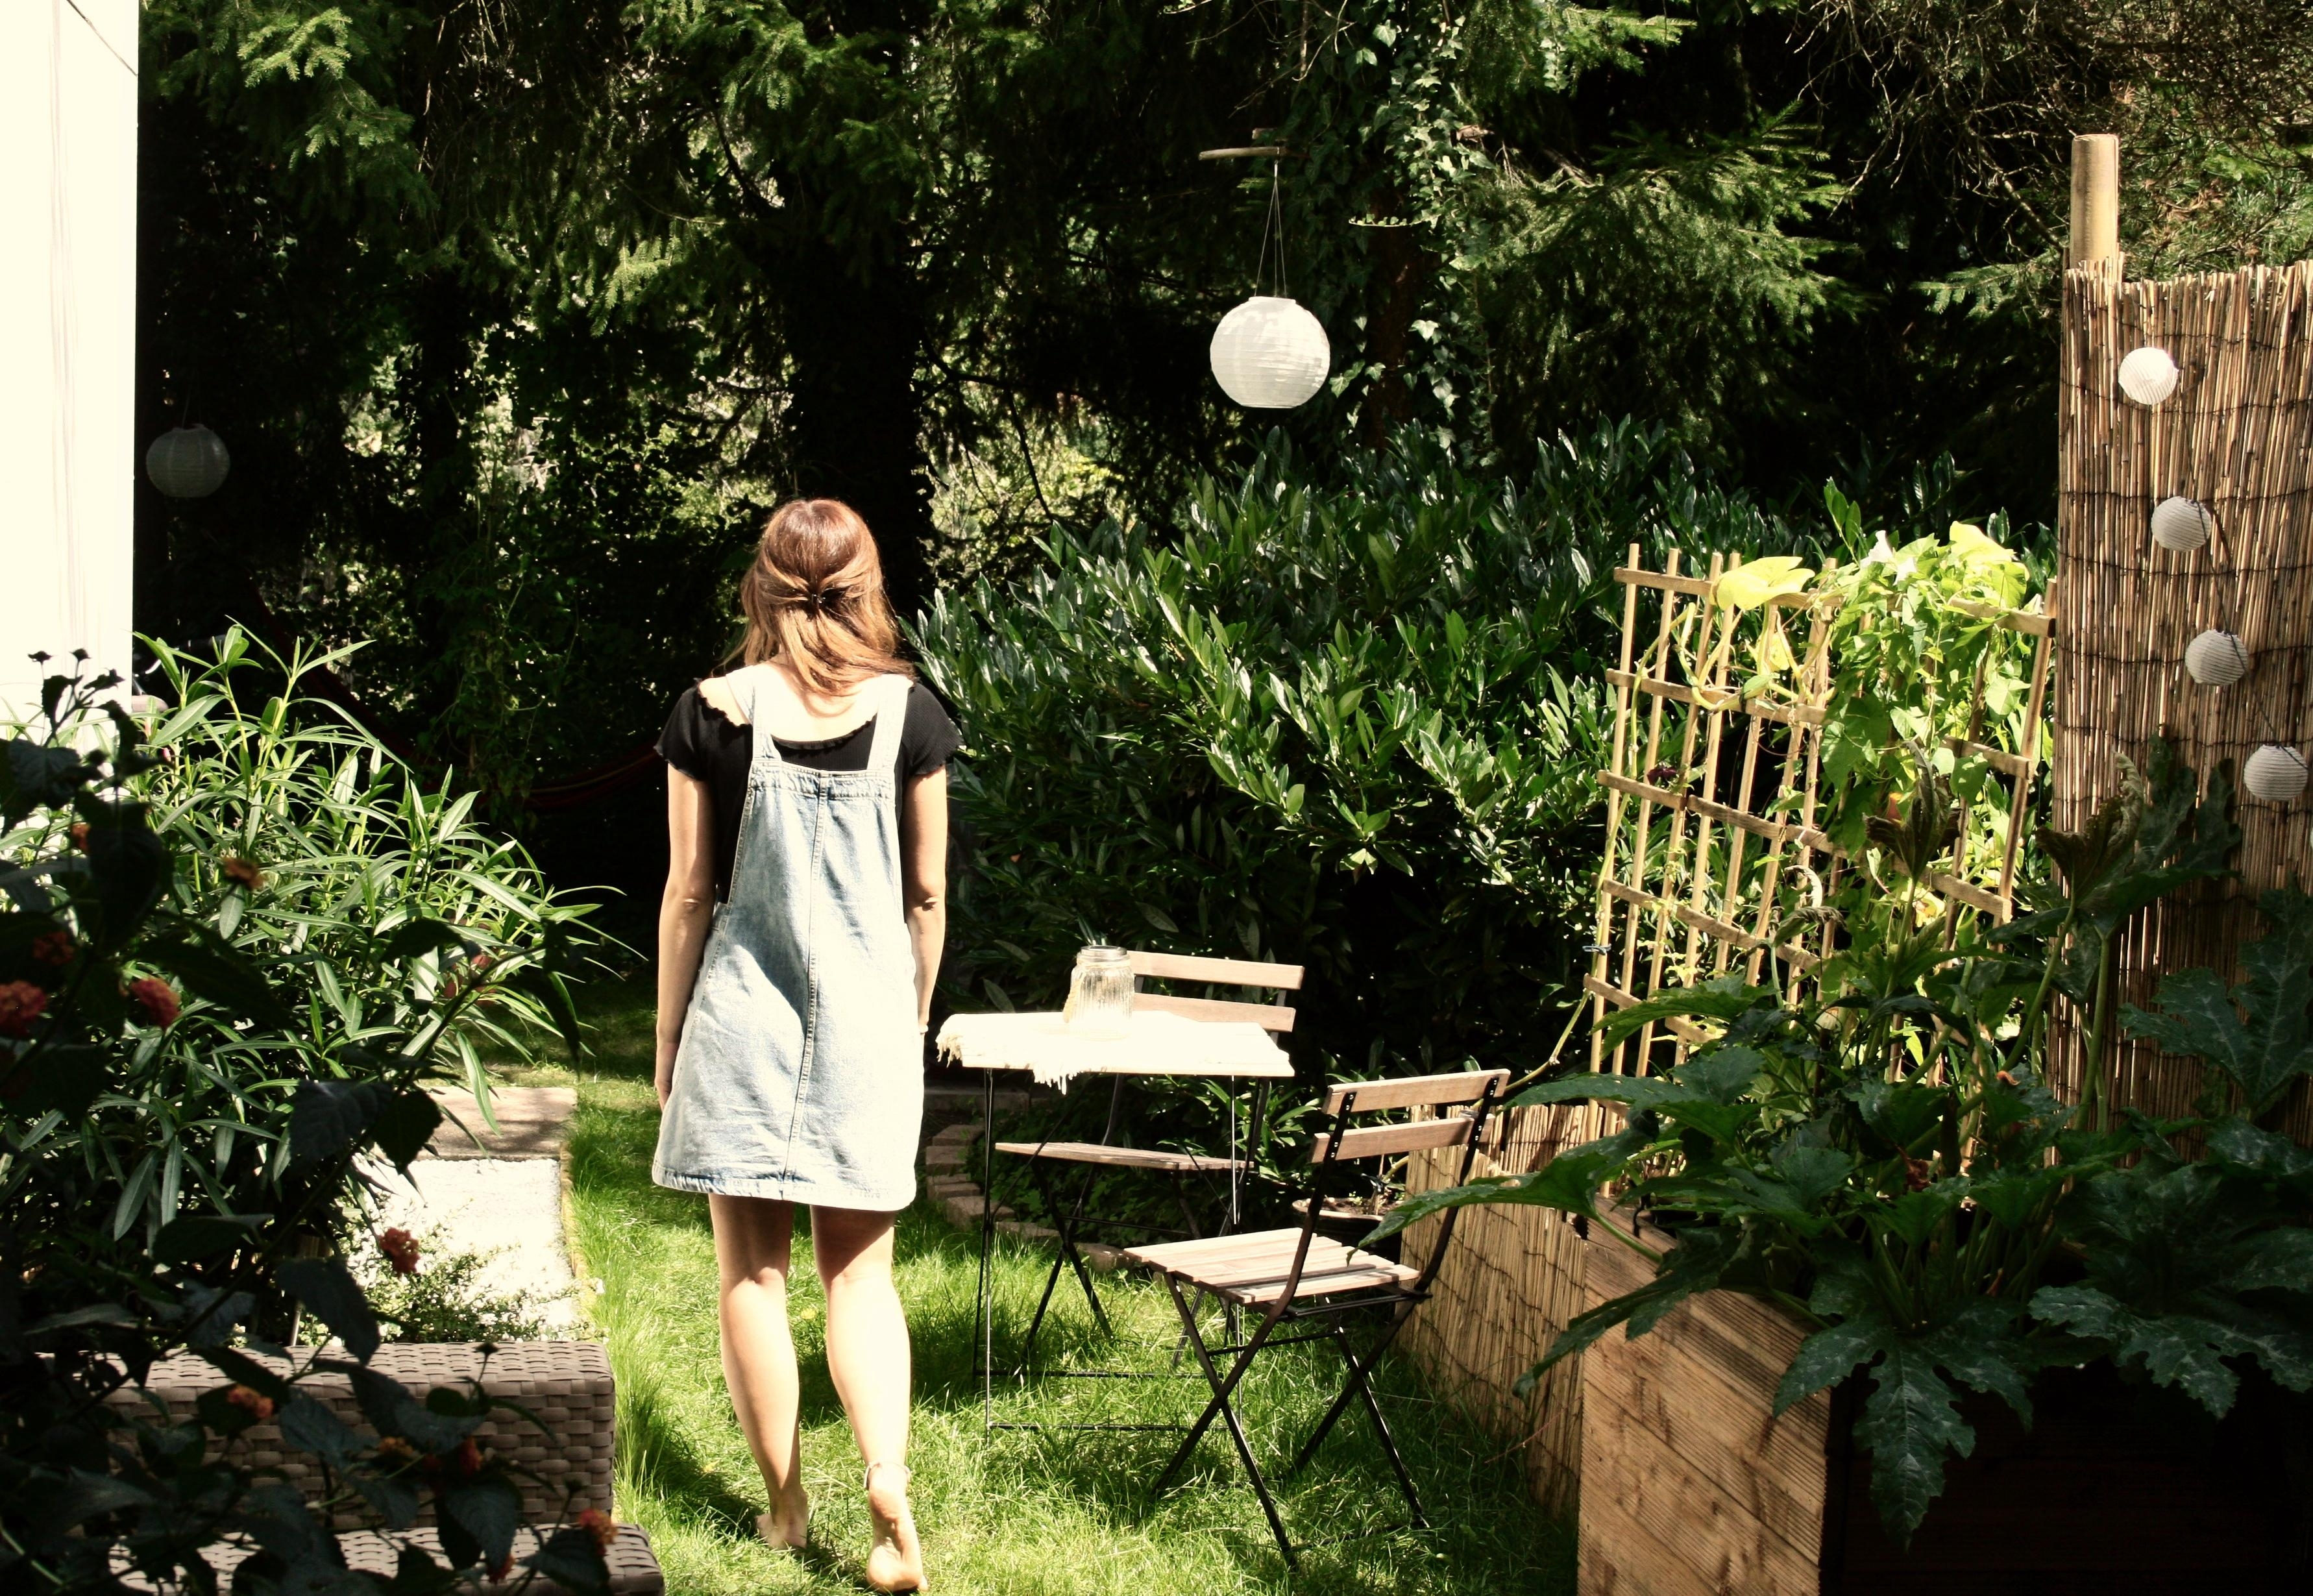 Unser kleiner Garten-noch rechtzeitig fertig bevor der Sommer vorbei ist 🌻
#garten#sonne#hochbeet
#sommergefühle#diy